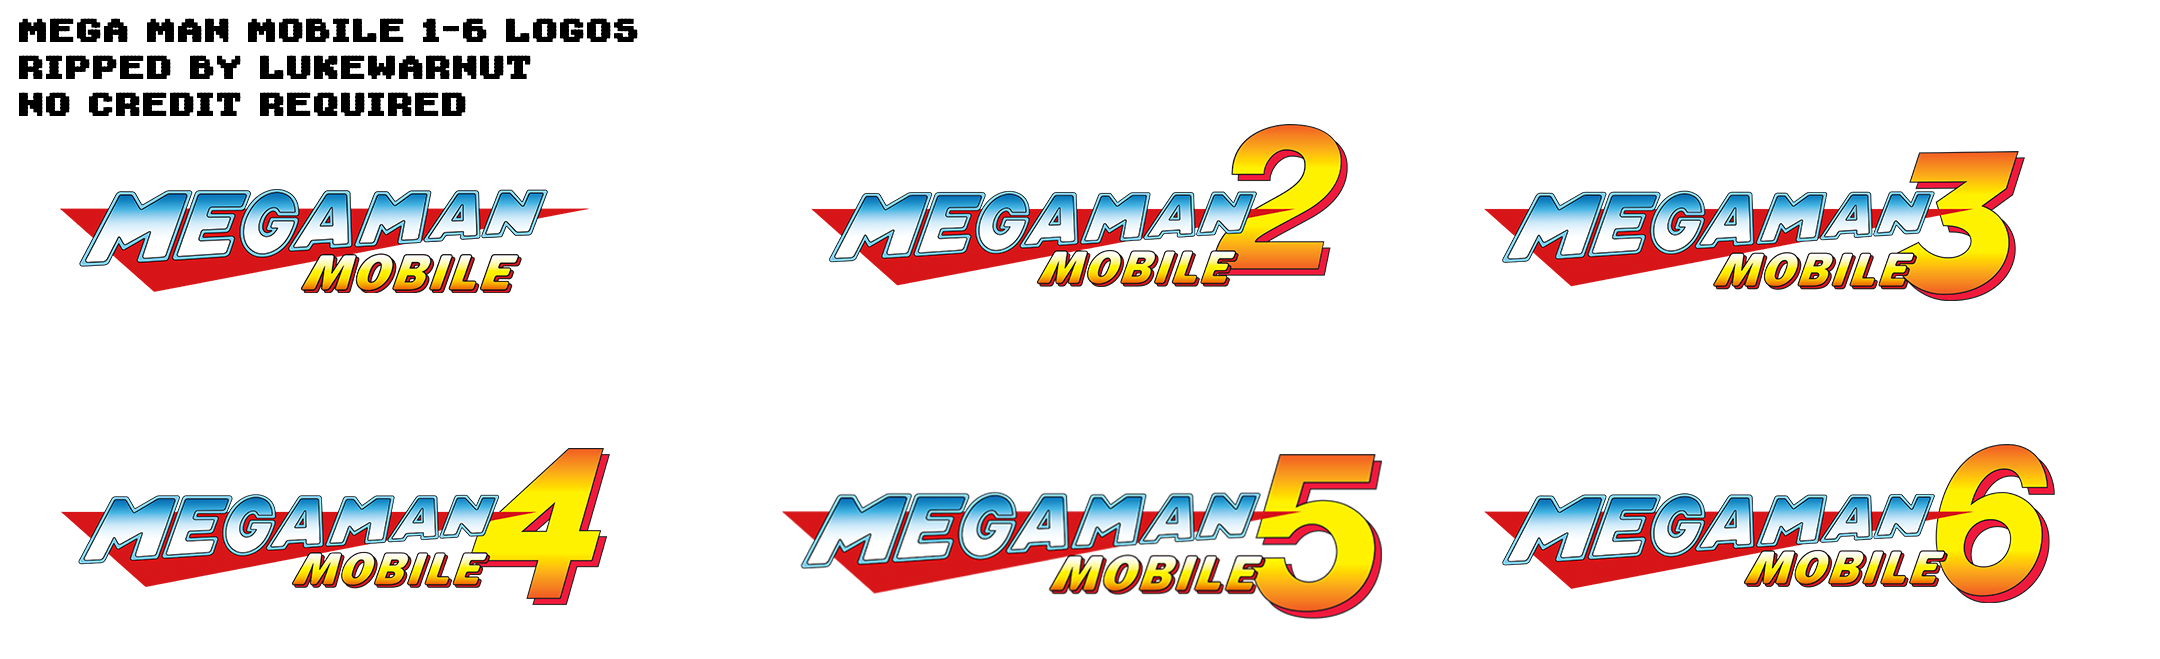 Mega Man Mobile 1-6 - Logos